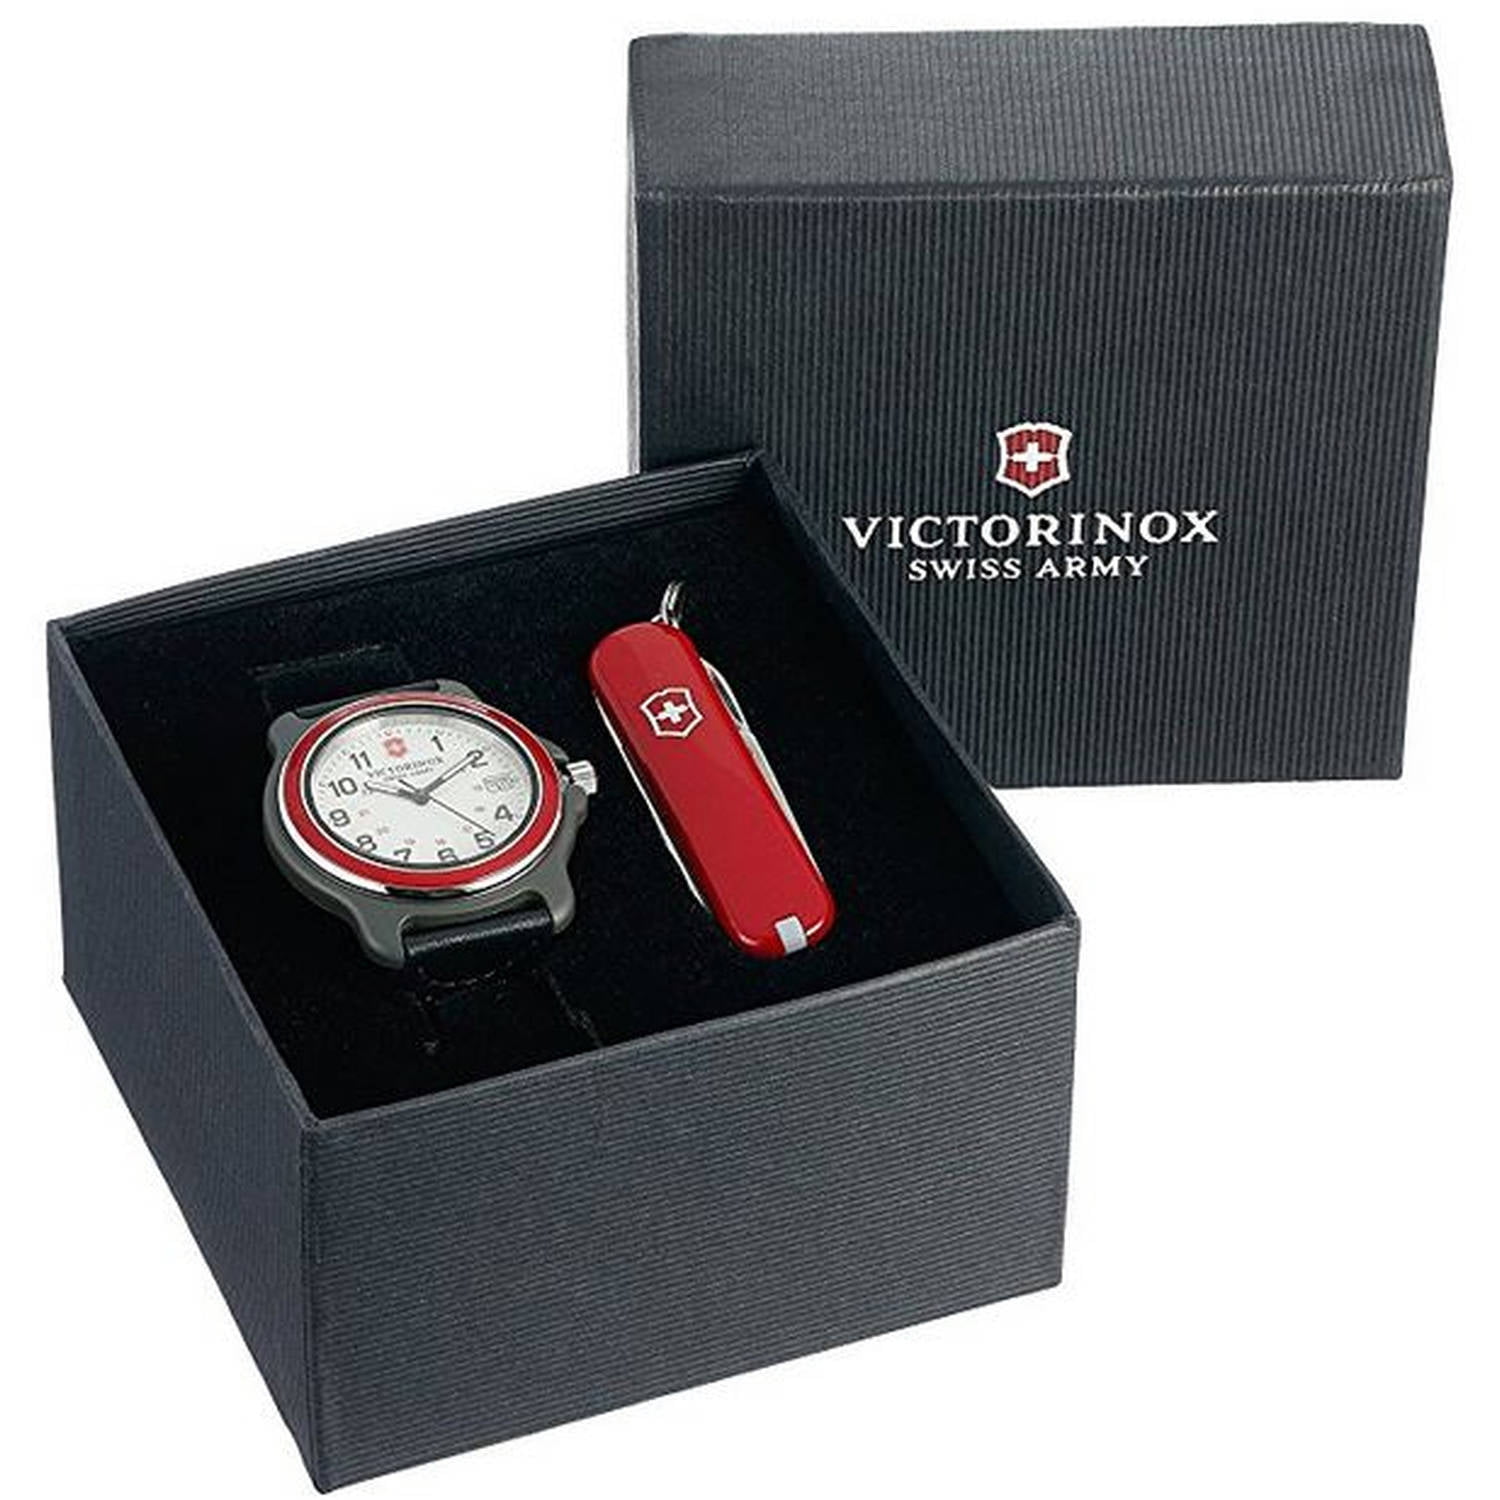 Оригинал швейцарии часы. Часы Victorinox Swiss Army. Victorinox Swiss Army (Original) small. Victorinox часы Swiss Army белые. Victorinox Swiss Army часы 241300.